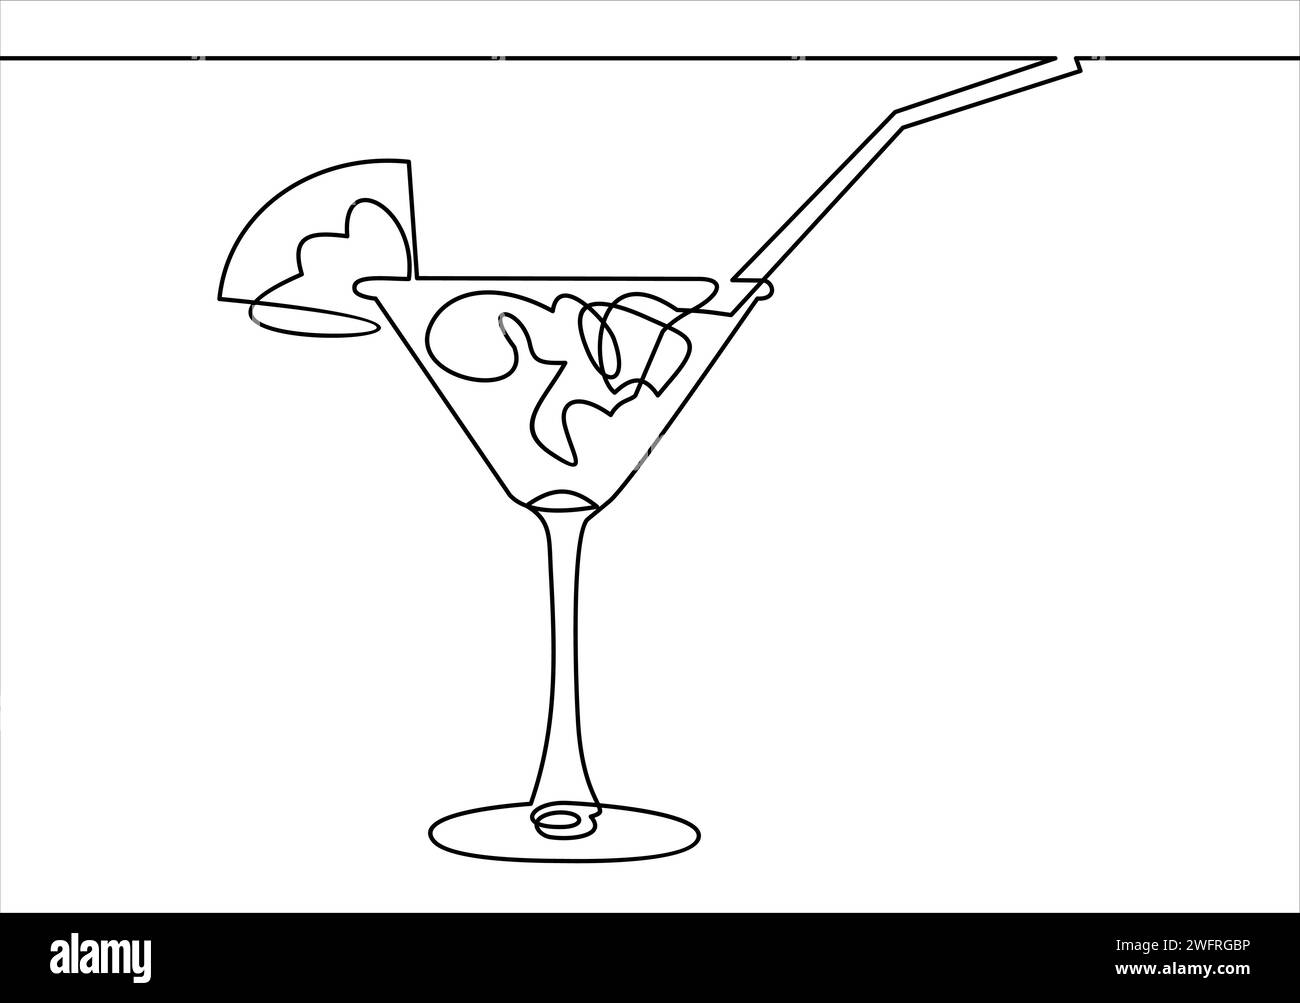 Disegno a linea continua. Wineglass con cocktail e limone. Illustrazione vettoriale disegnata a mano. Illustrazione Vettoriale